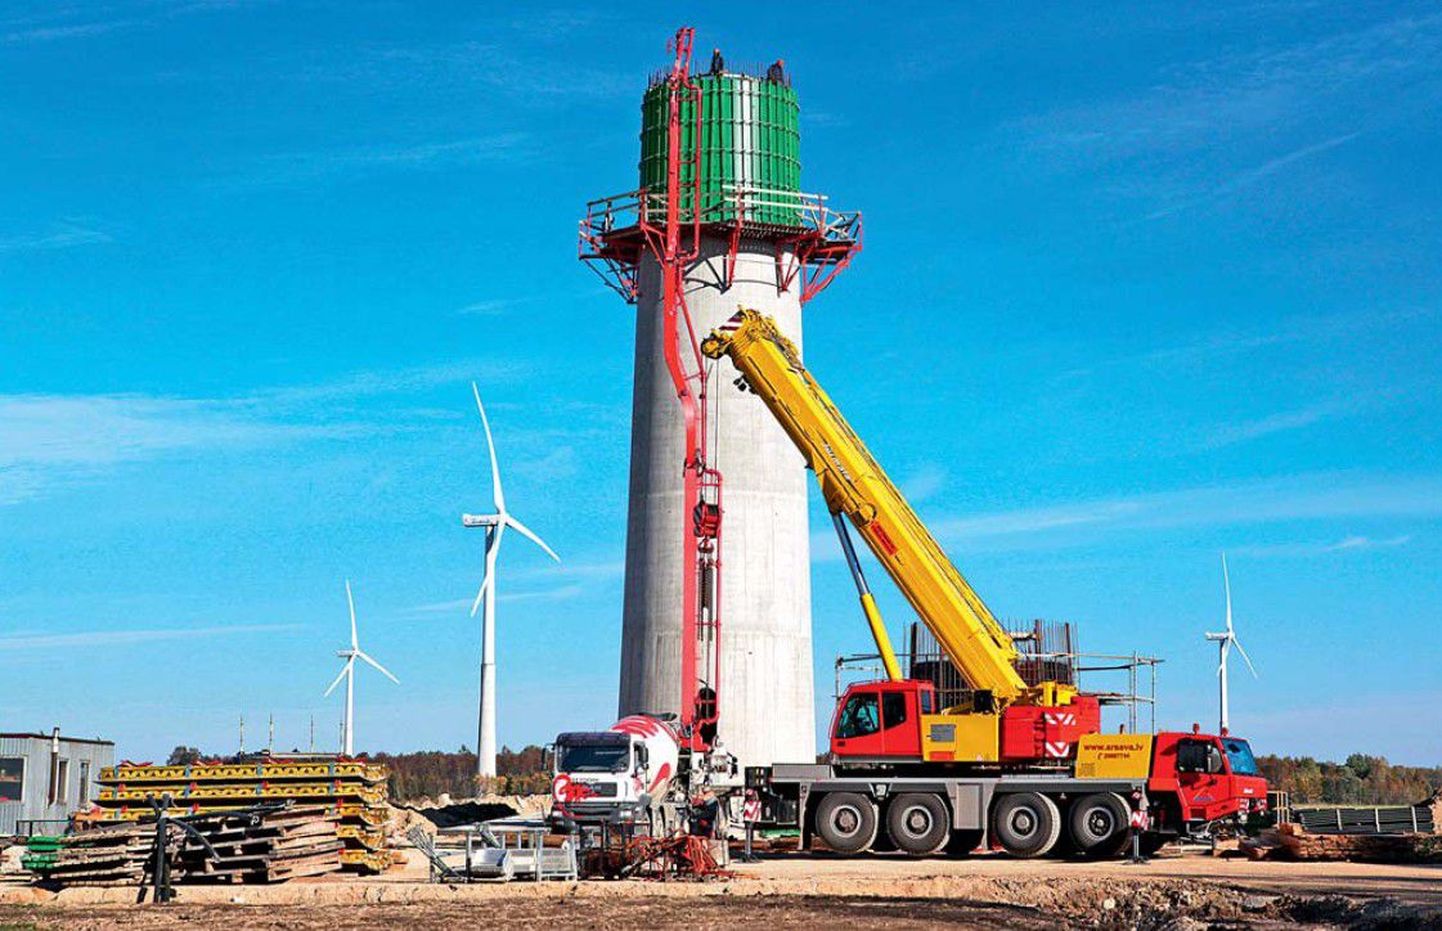 Tuuleenergiasse investeeritakse lähiaastail sadu miljoneid eurosid. Pildil Noarootsi tuulepargi ehitus Läänemaal.